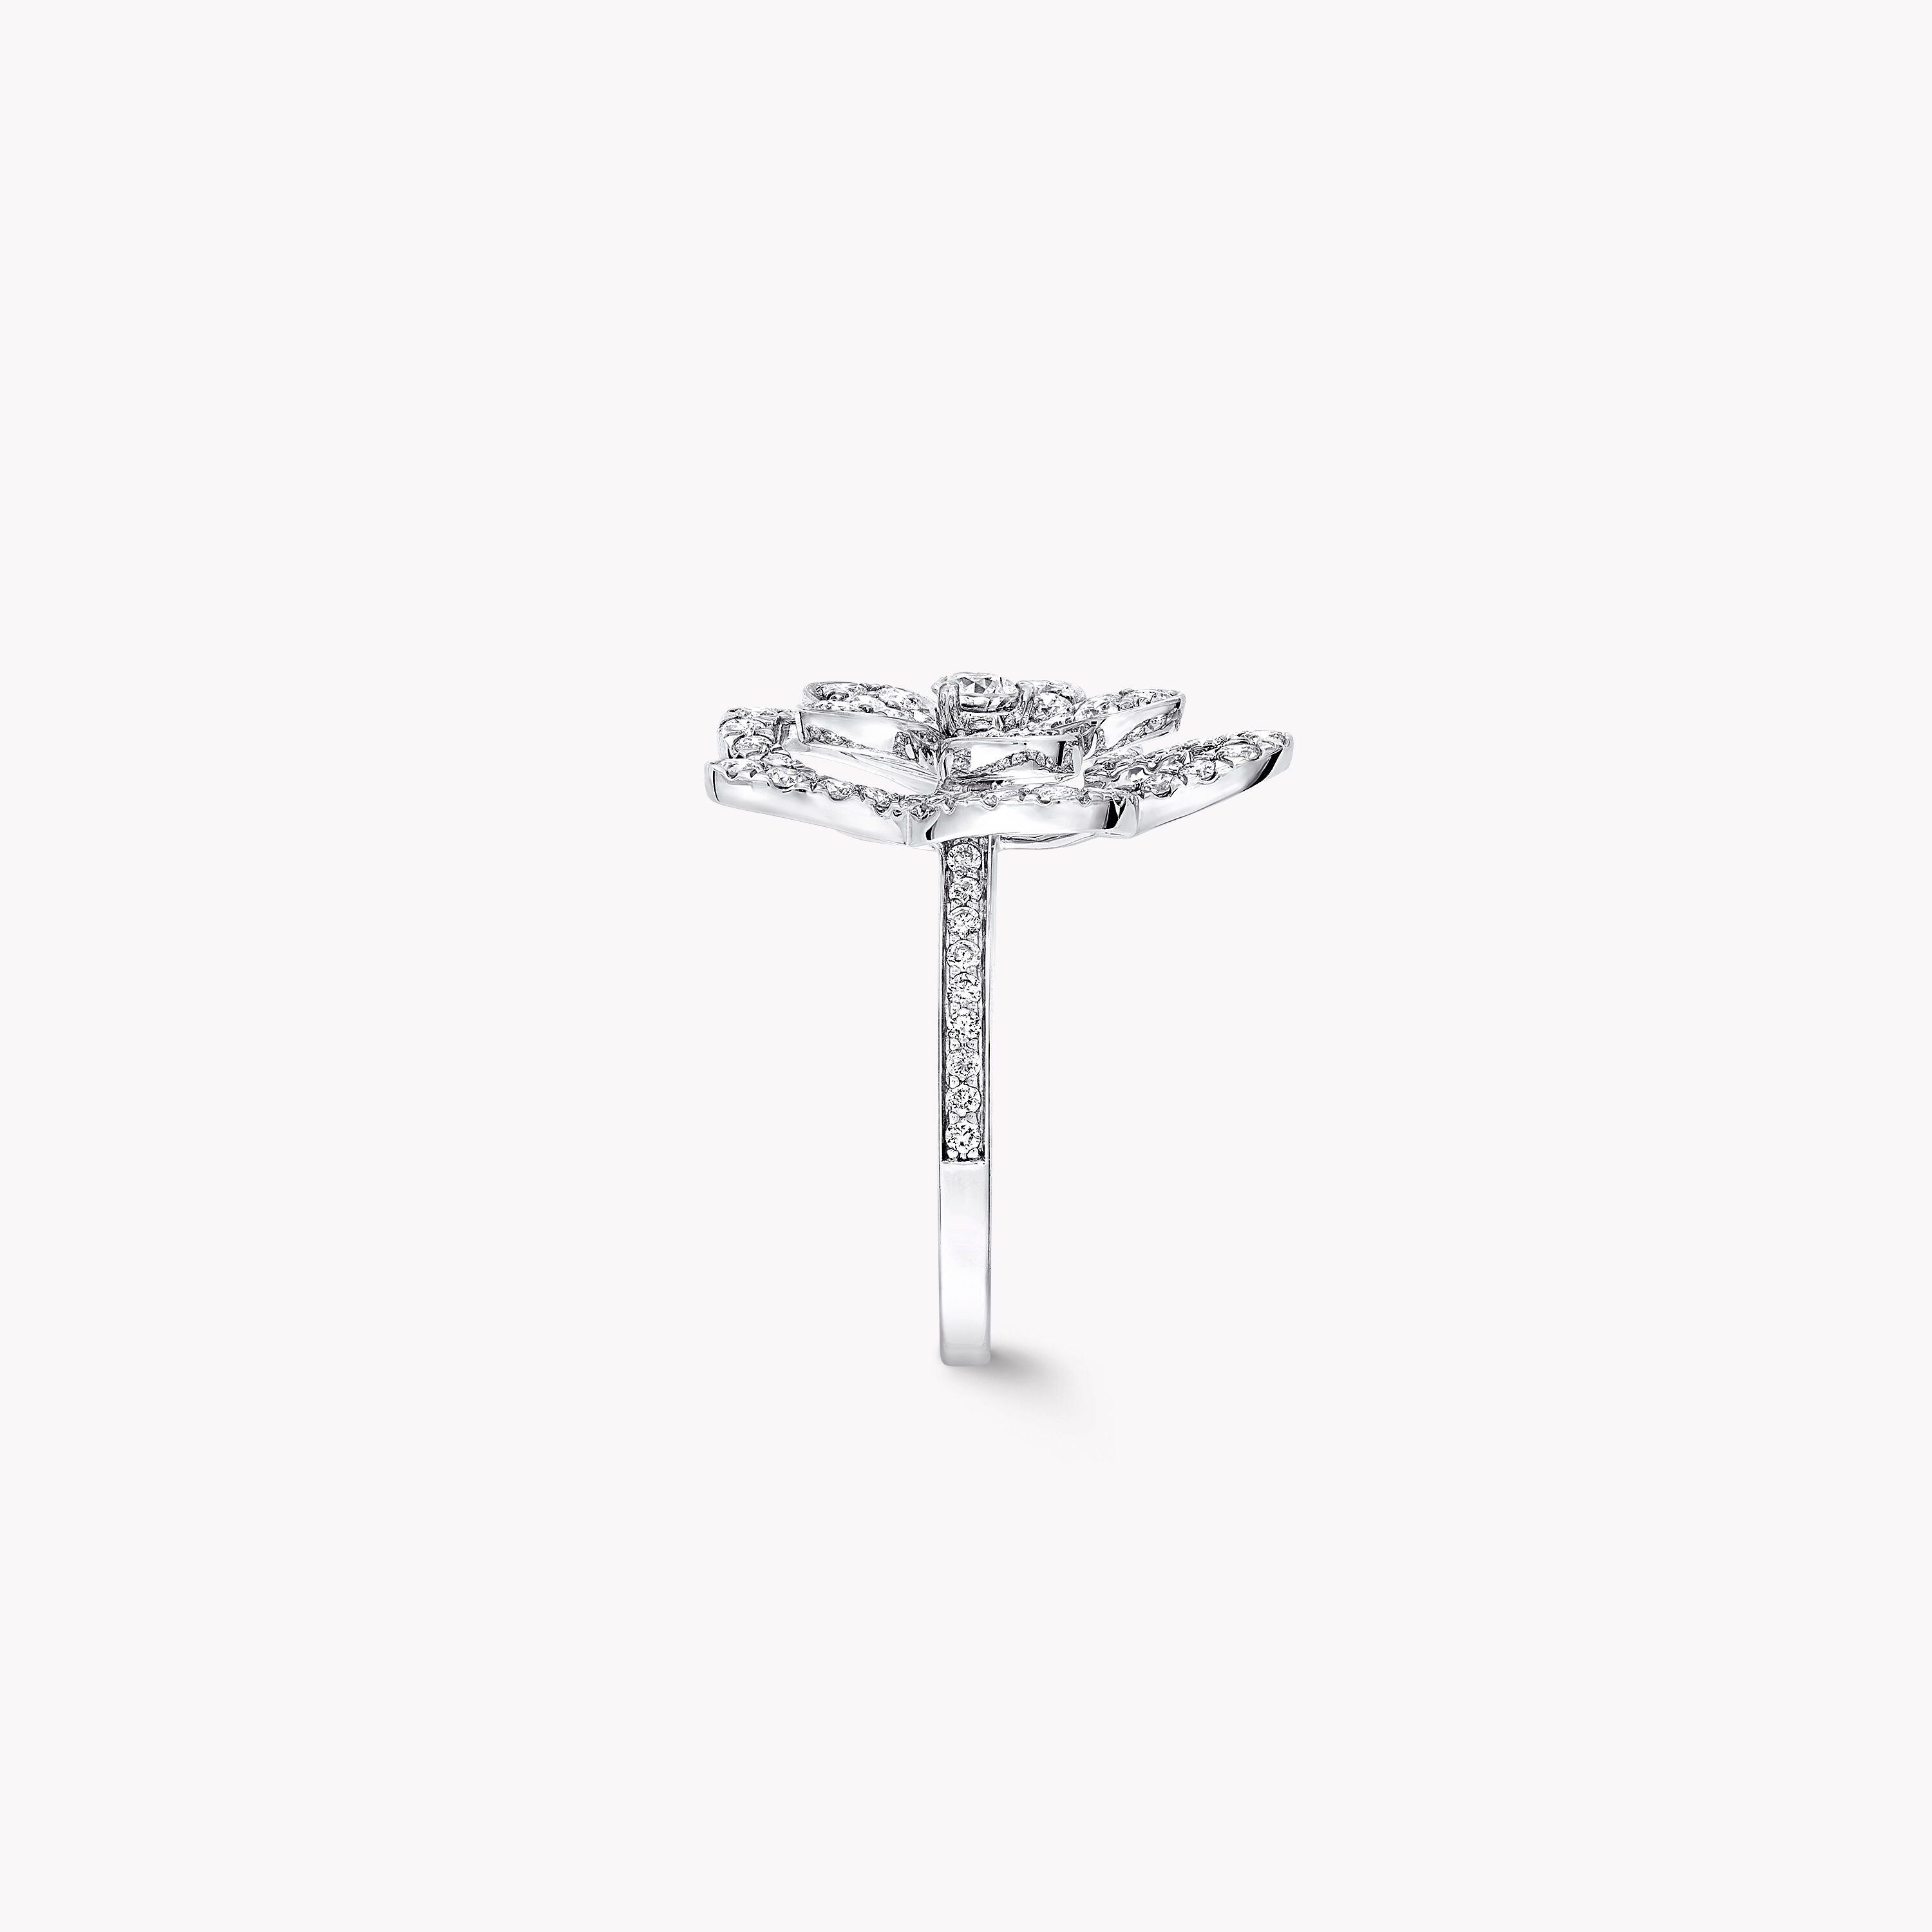 【Jewelry】K10WG フラワーモチーフ ダイヤモンド デザインリング A.0.04ct D.0.05ct 15号 2g/hm08329tg